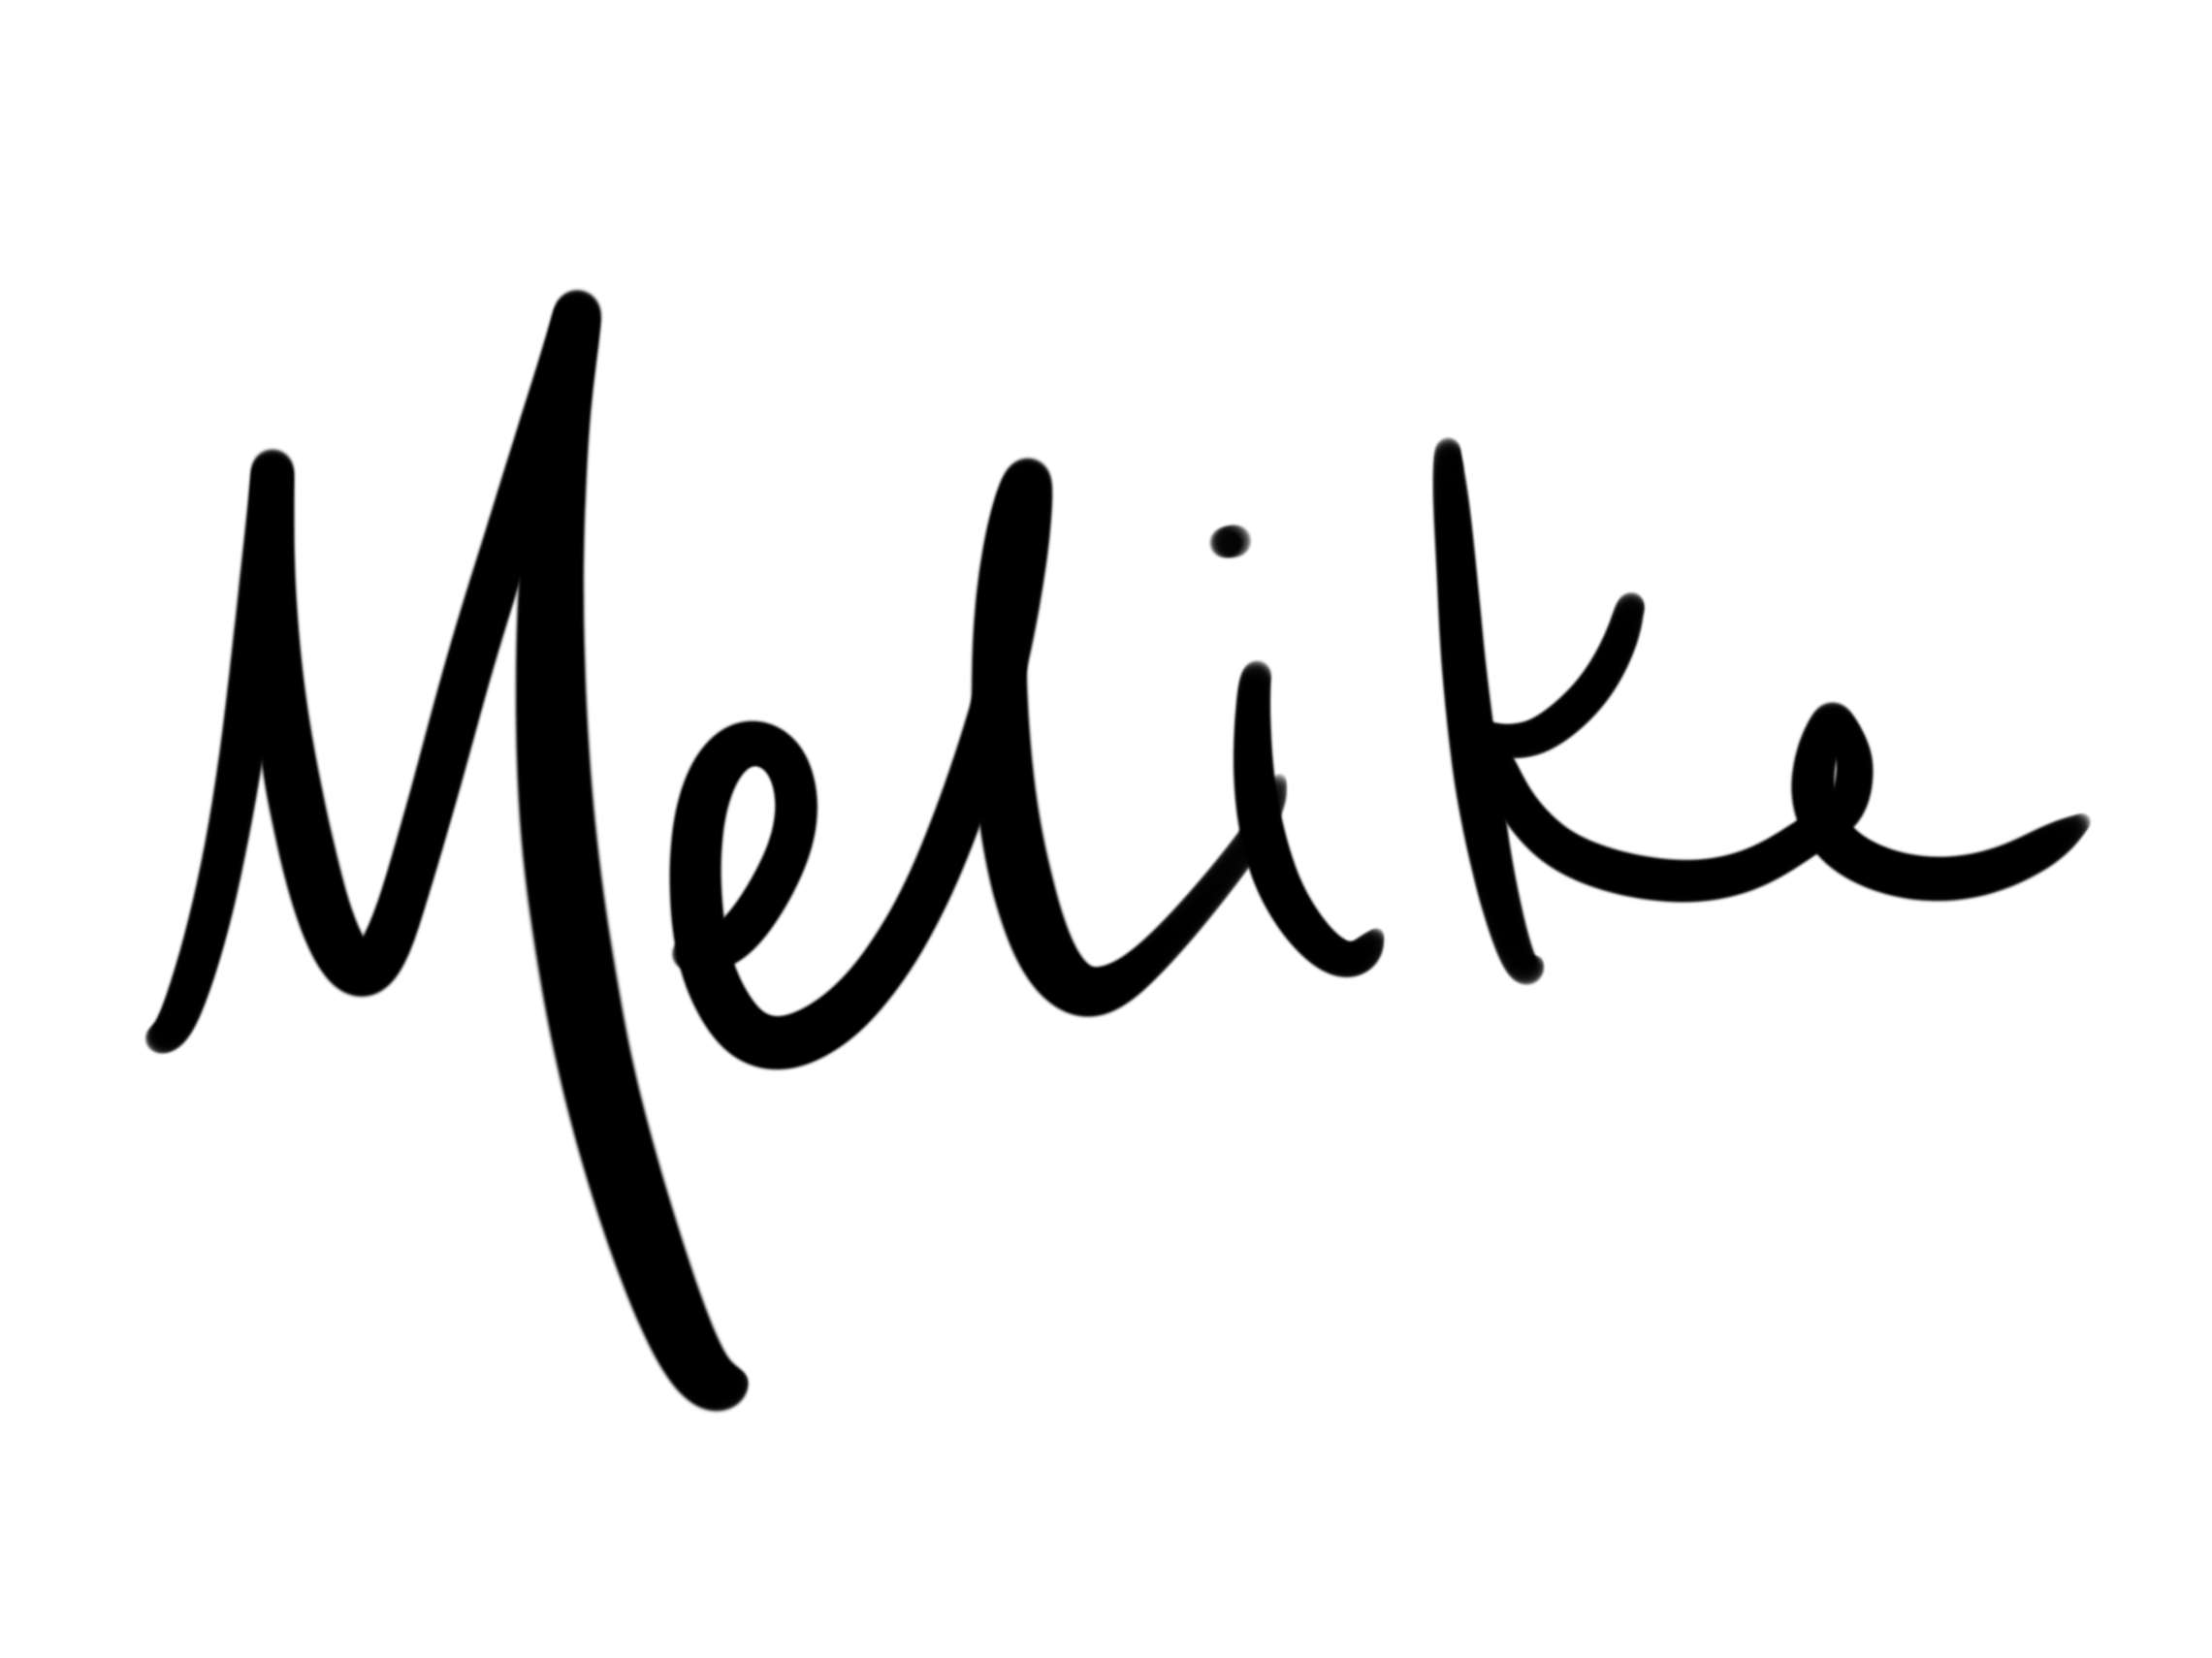 Melike Carr